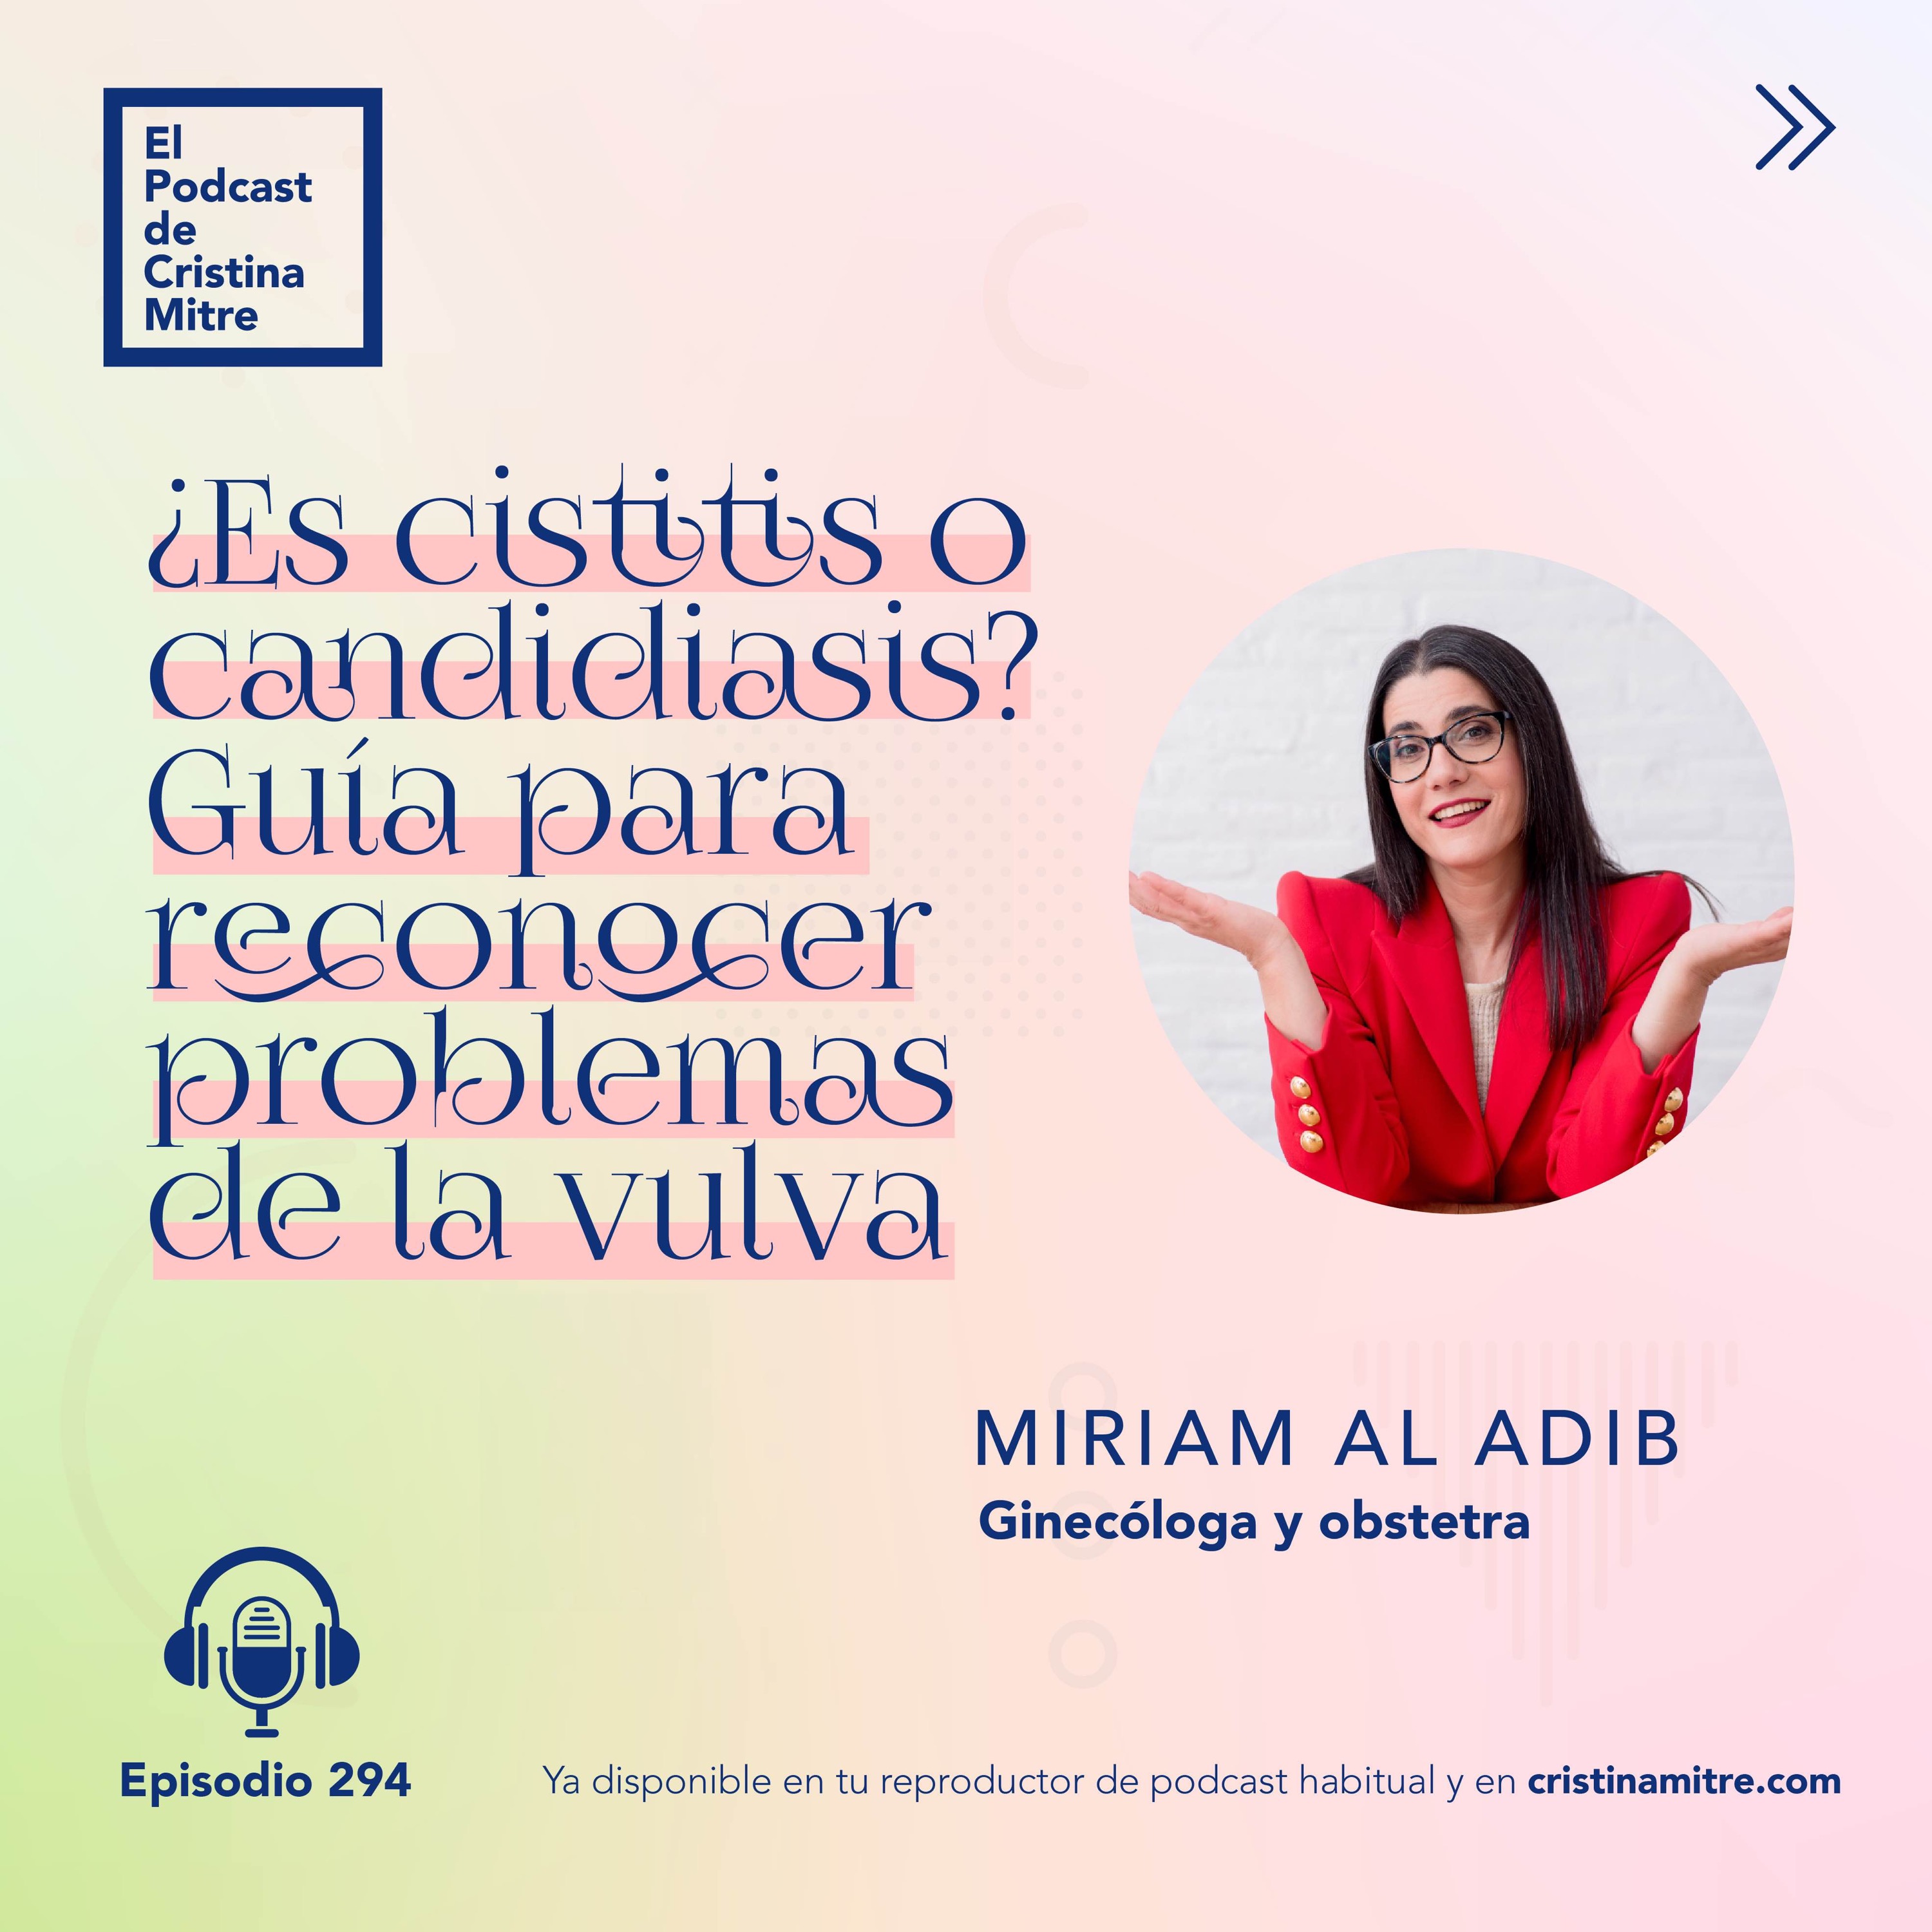 ¿Es cistitis o candidiasis? Guía para reconocer problemas de la vulva, con Miriam Al Adib. Episodio 294